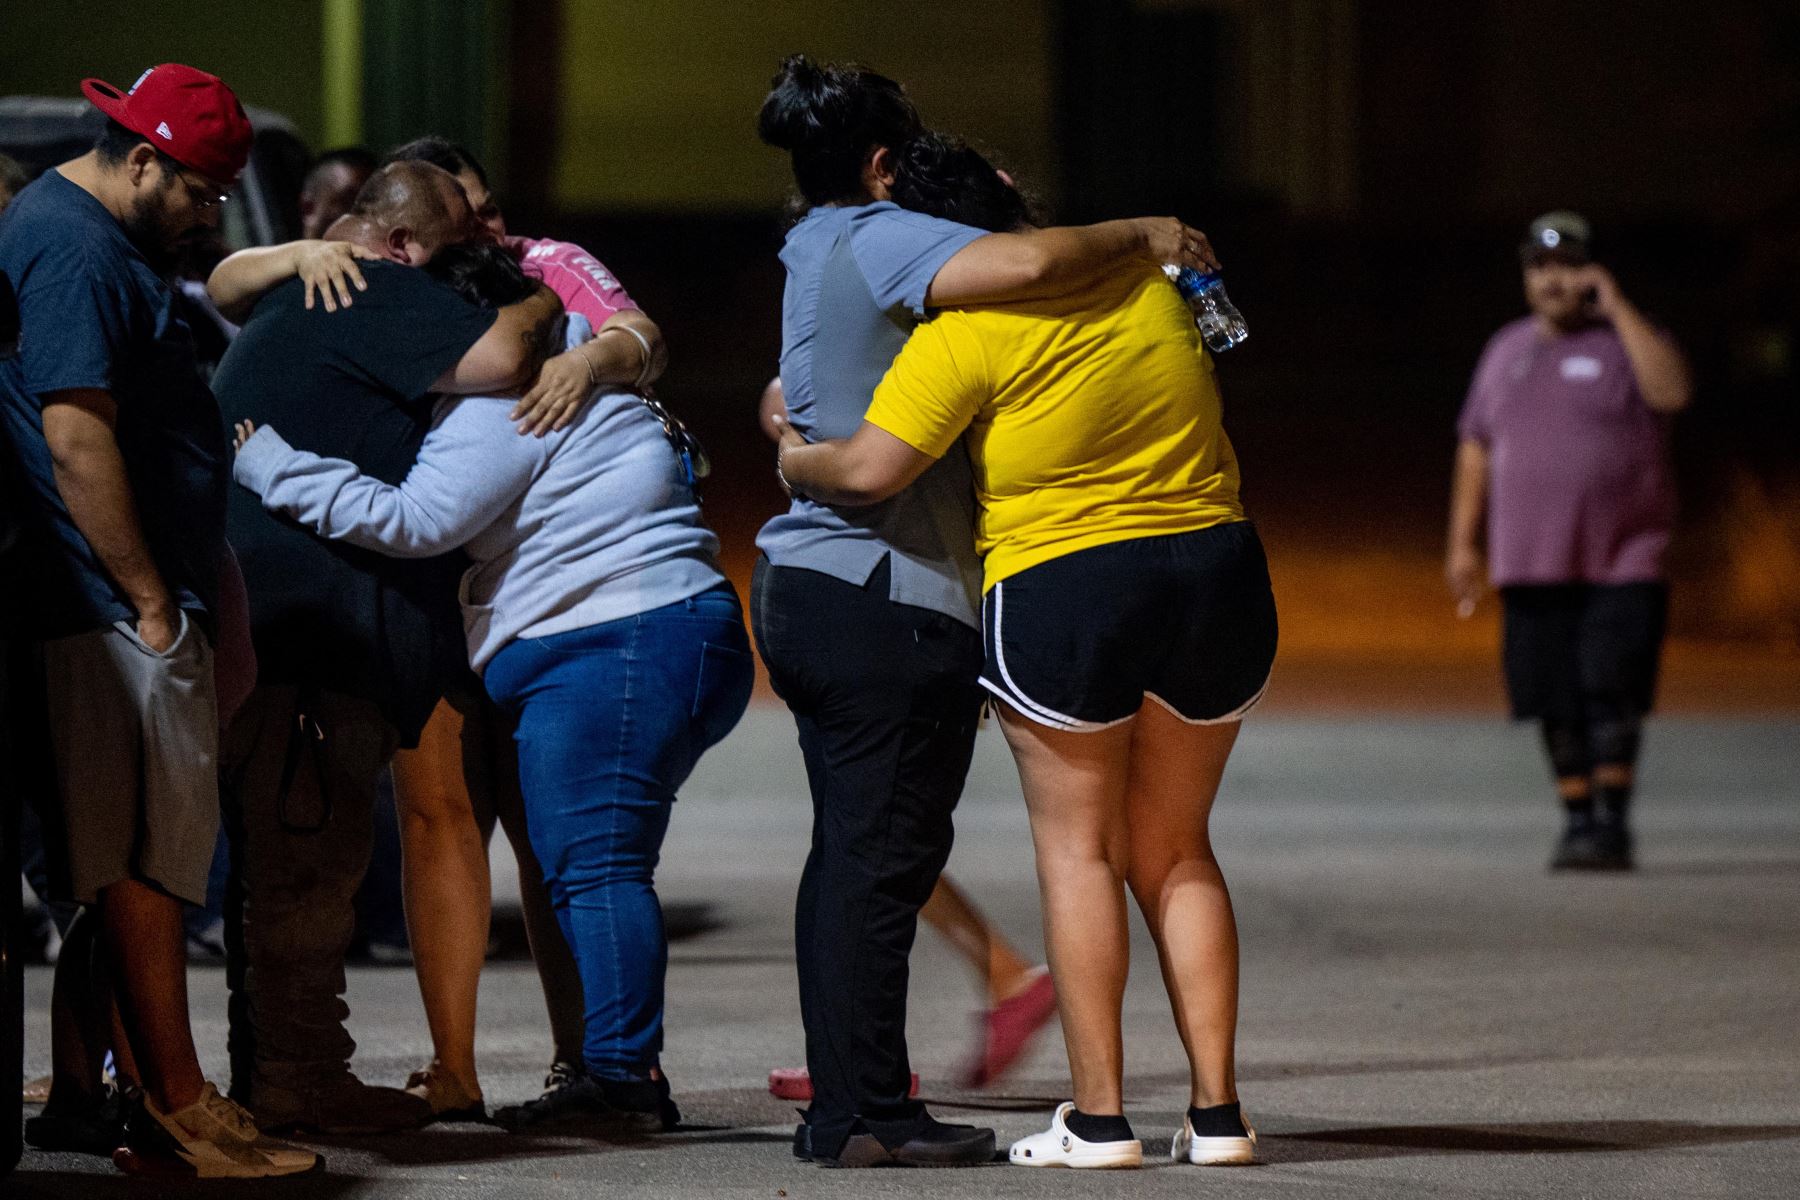 Una familia llora afuera del Centro Cívico SSGT Willie de Leon luego del tiroteo masivo en la Escuela Primaria Robb el 24 de mayo de 2022 en Uvalde, Texas.Según los informes, 19 estudiantes y 2 adultos fueron asesinados. Foto: AFP